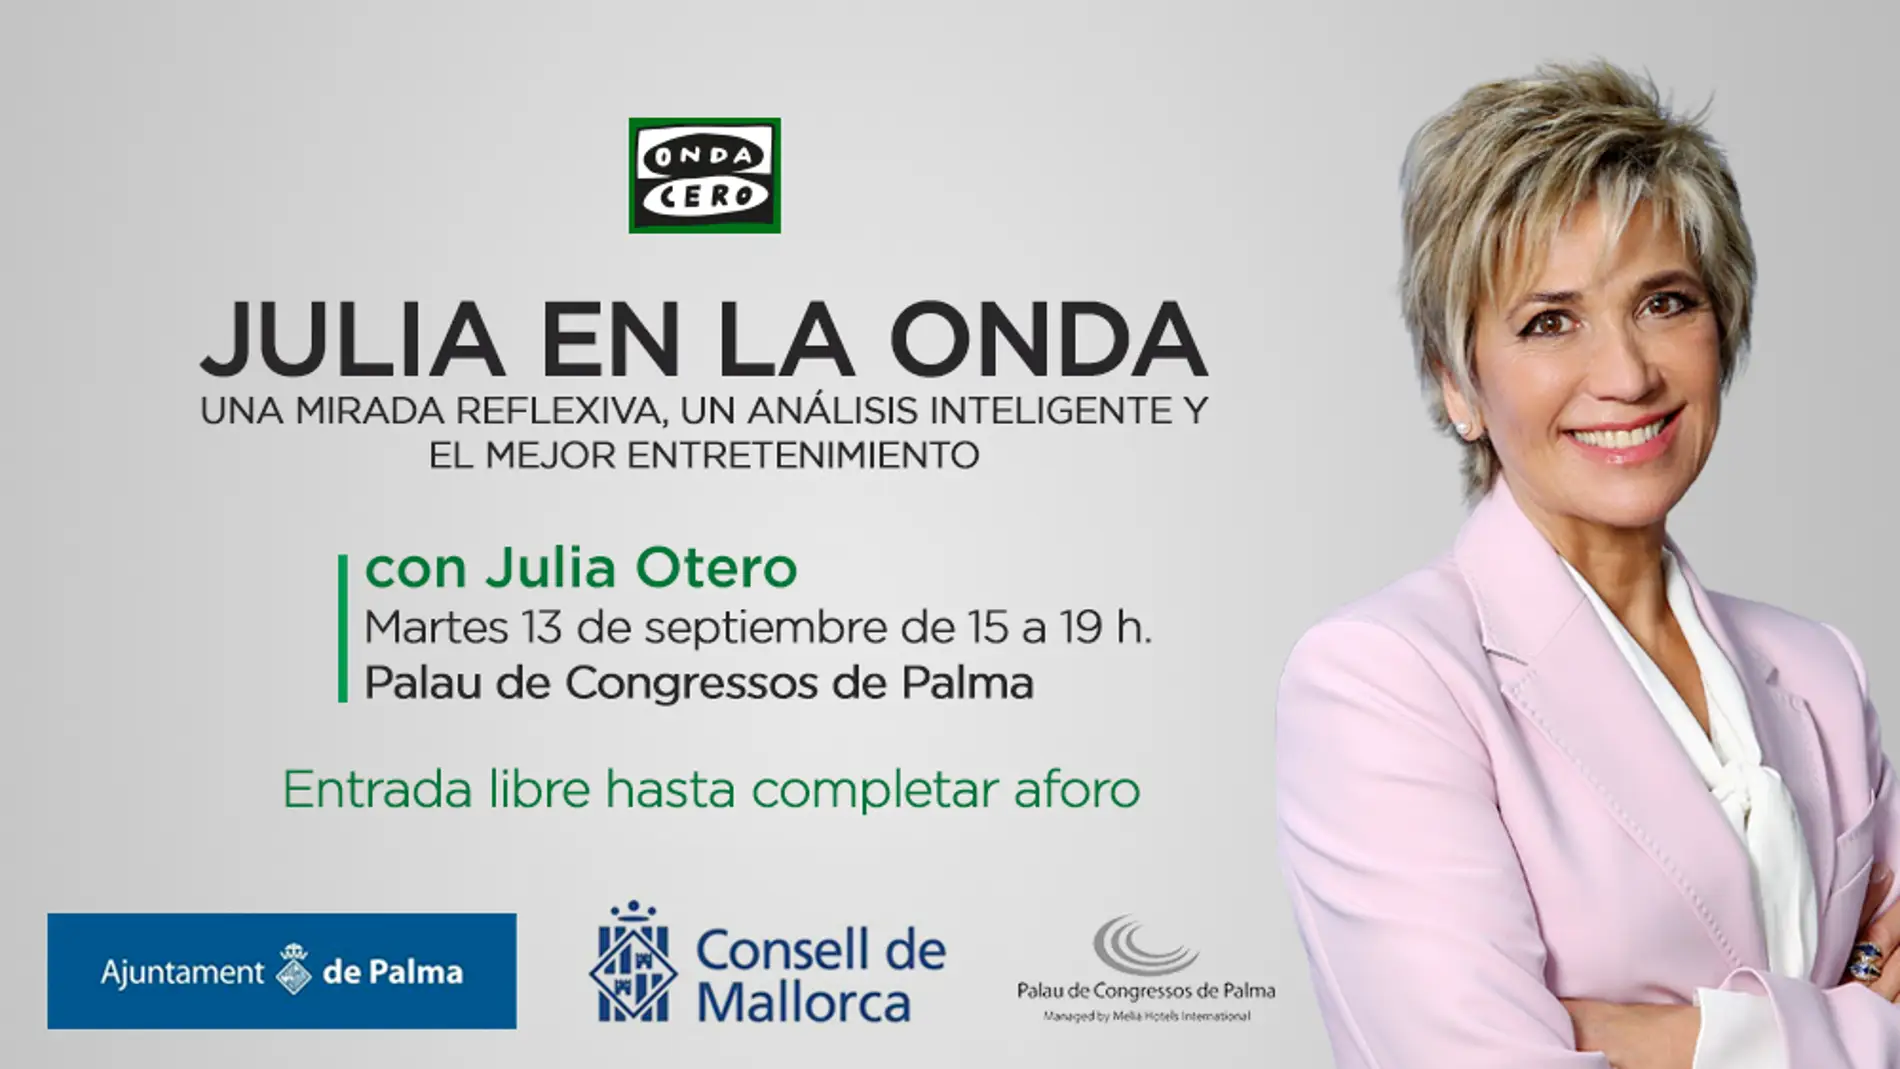 "Julia en la Onda" se realizará en directo desde Palma, el próximo martes 13 de septiembre. 